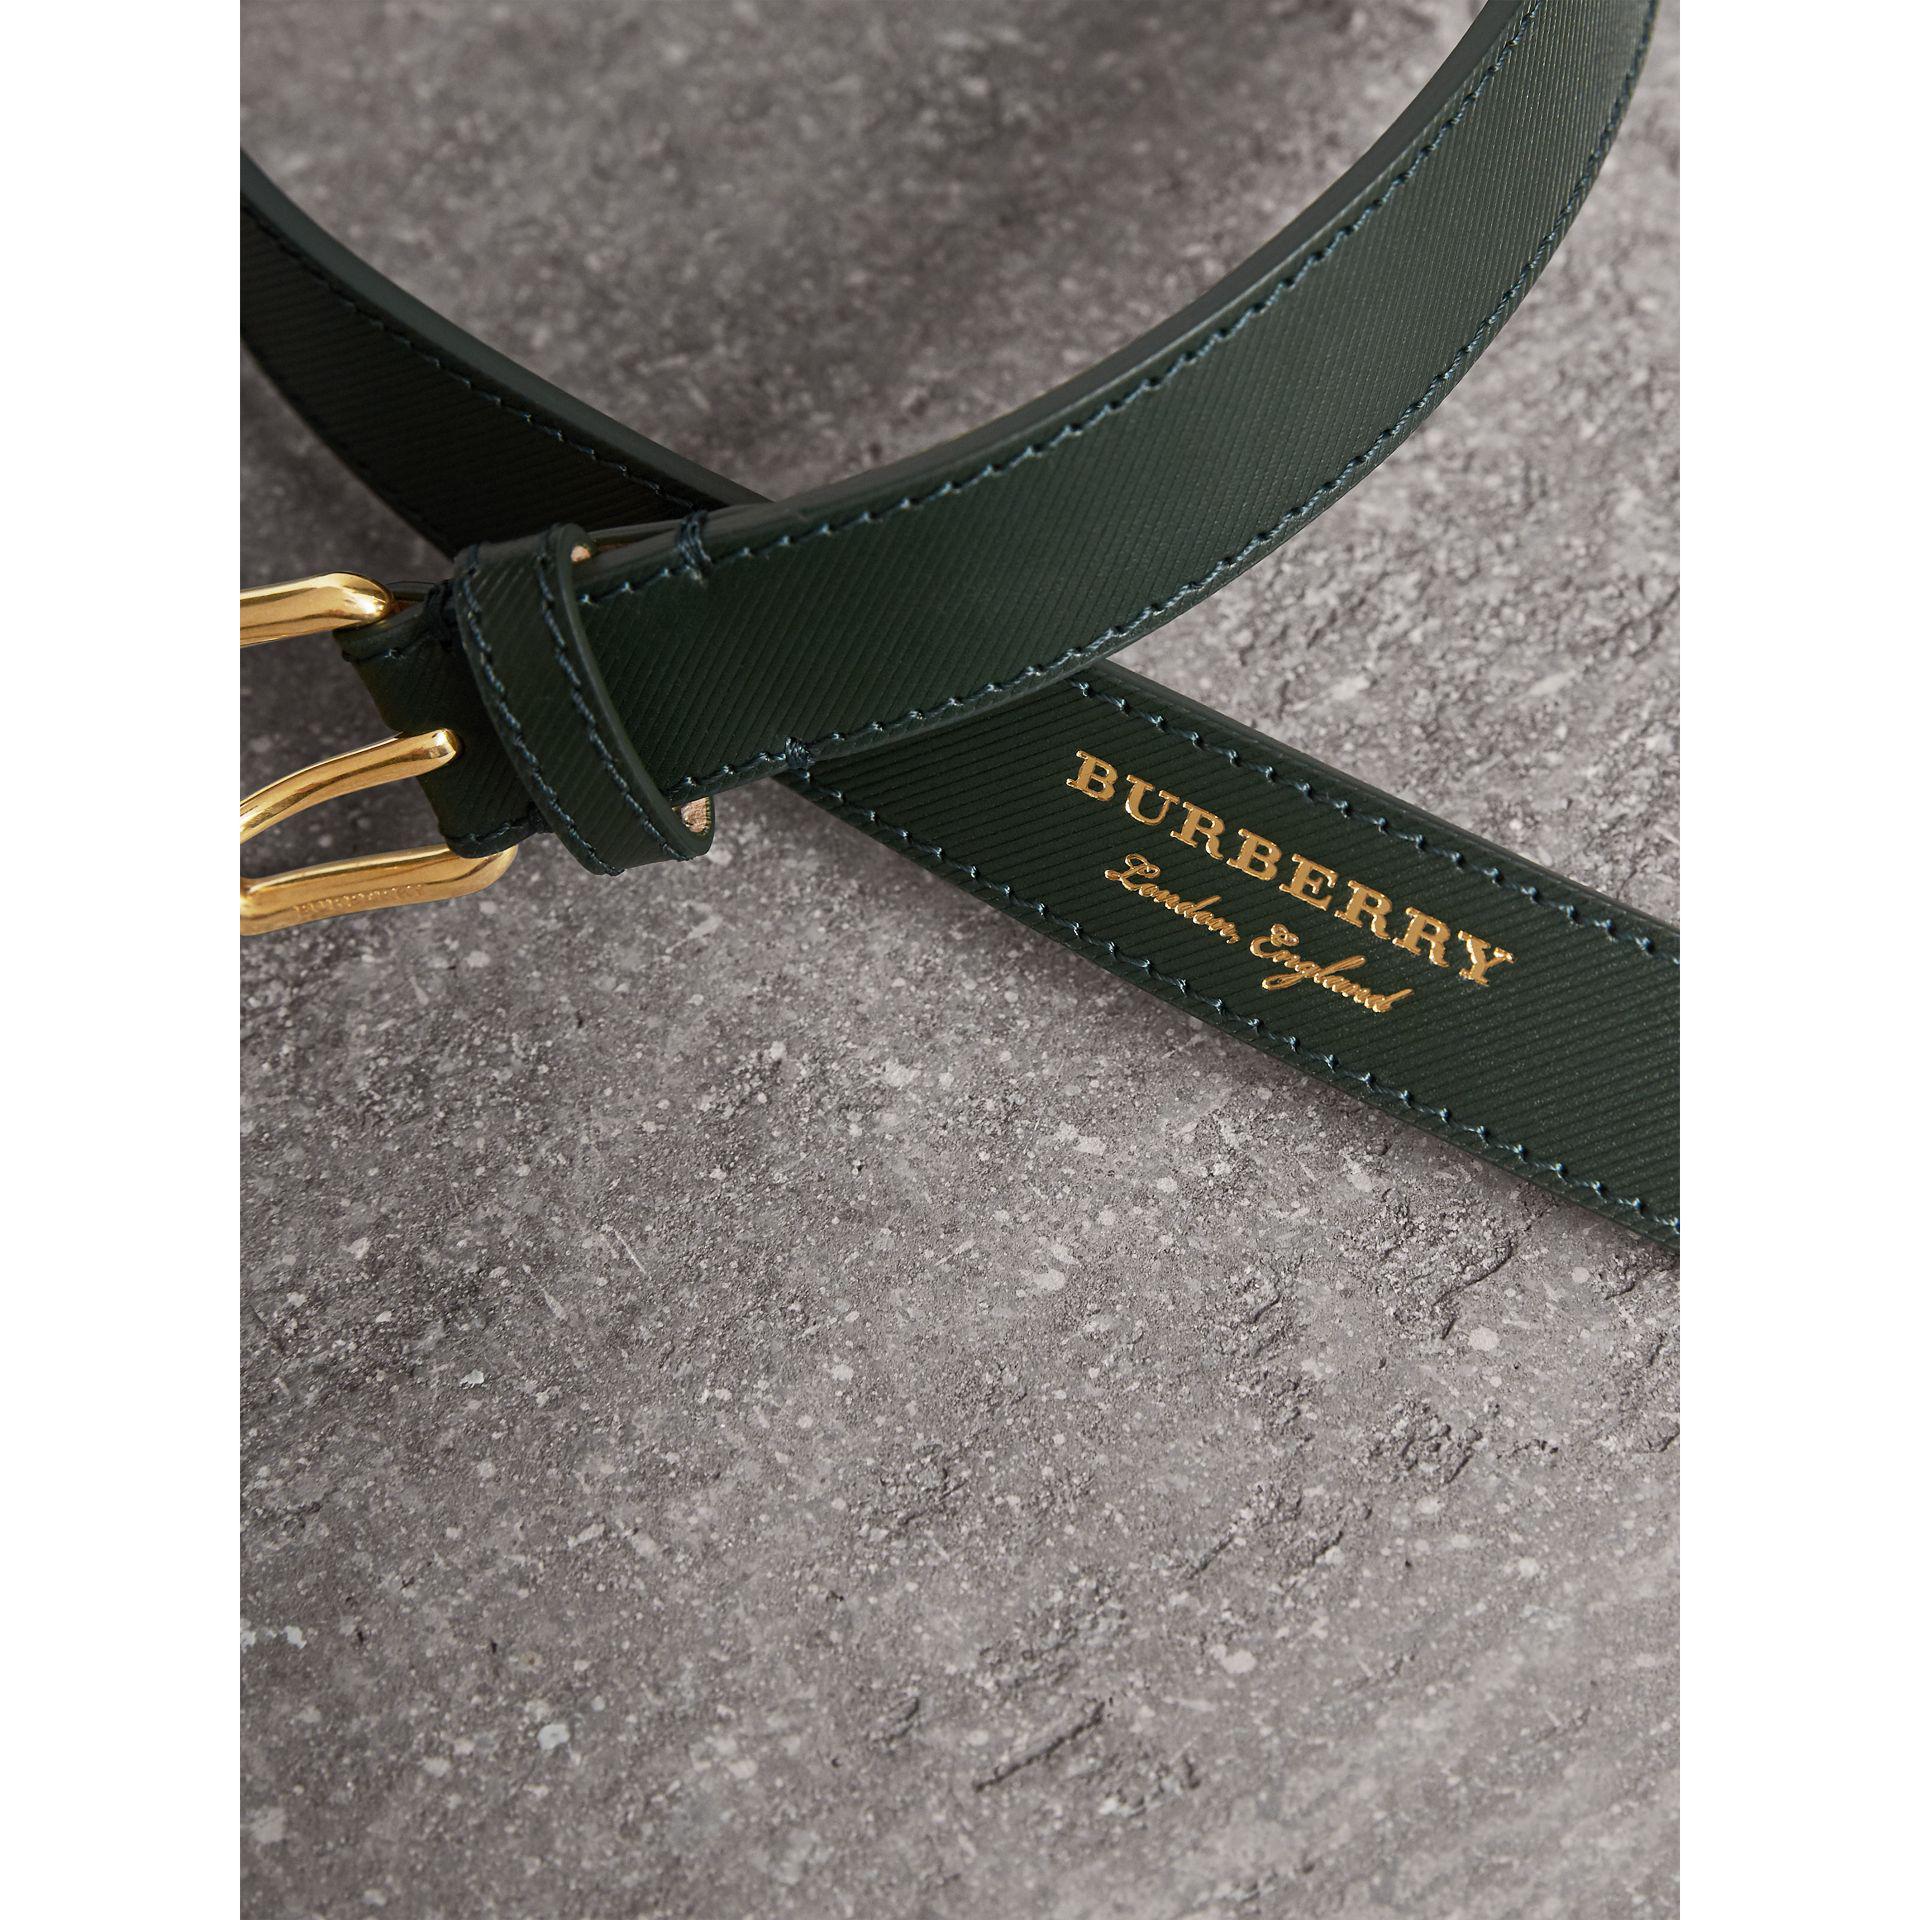 burberry belt green